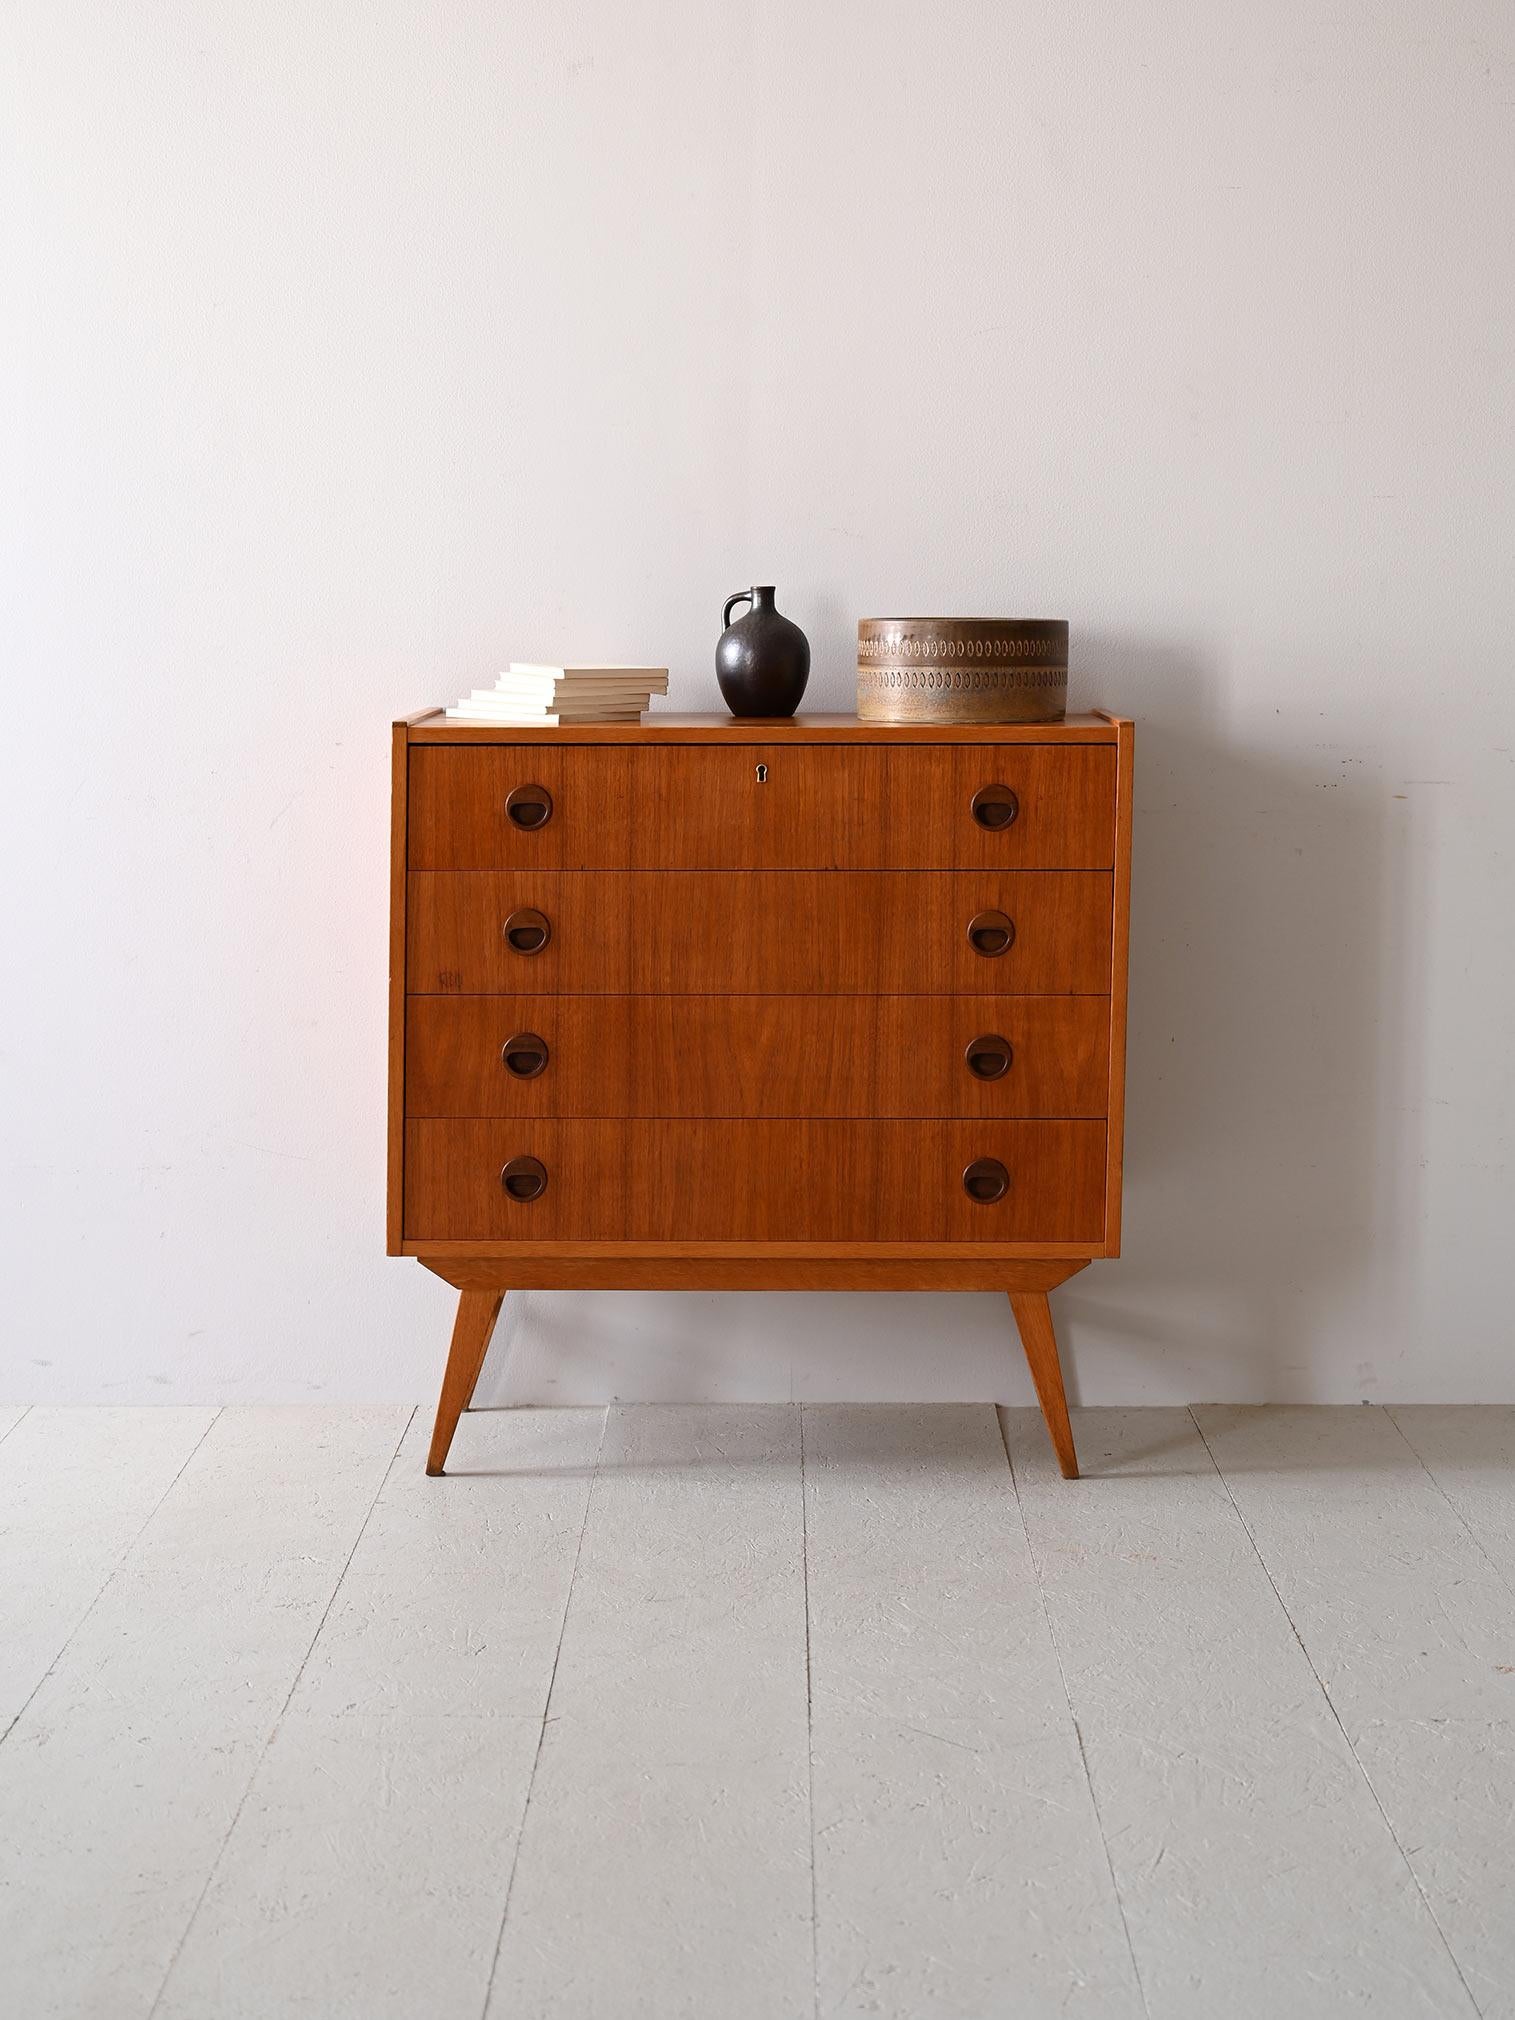 La cassettiera, originaria del design nordico anni '60, è realizzata in teak, un legno apprezzato per la sua resistenza e la grana distintiva.
Il suo aspetto è definito da linee semplici e maniglie tonde incassate, tipiche dello stile del tempo. Pur